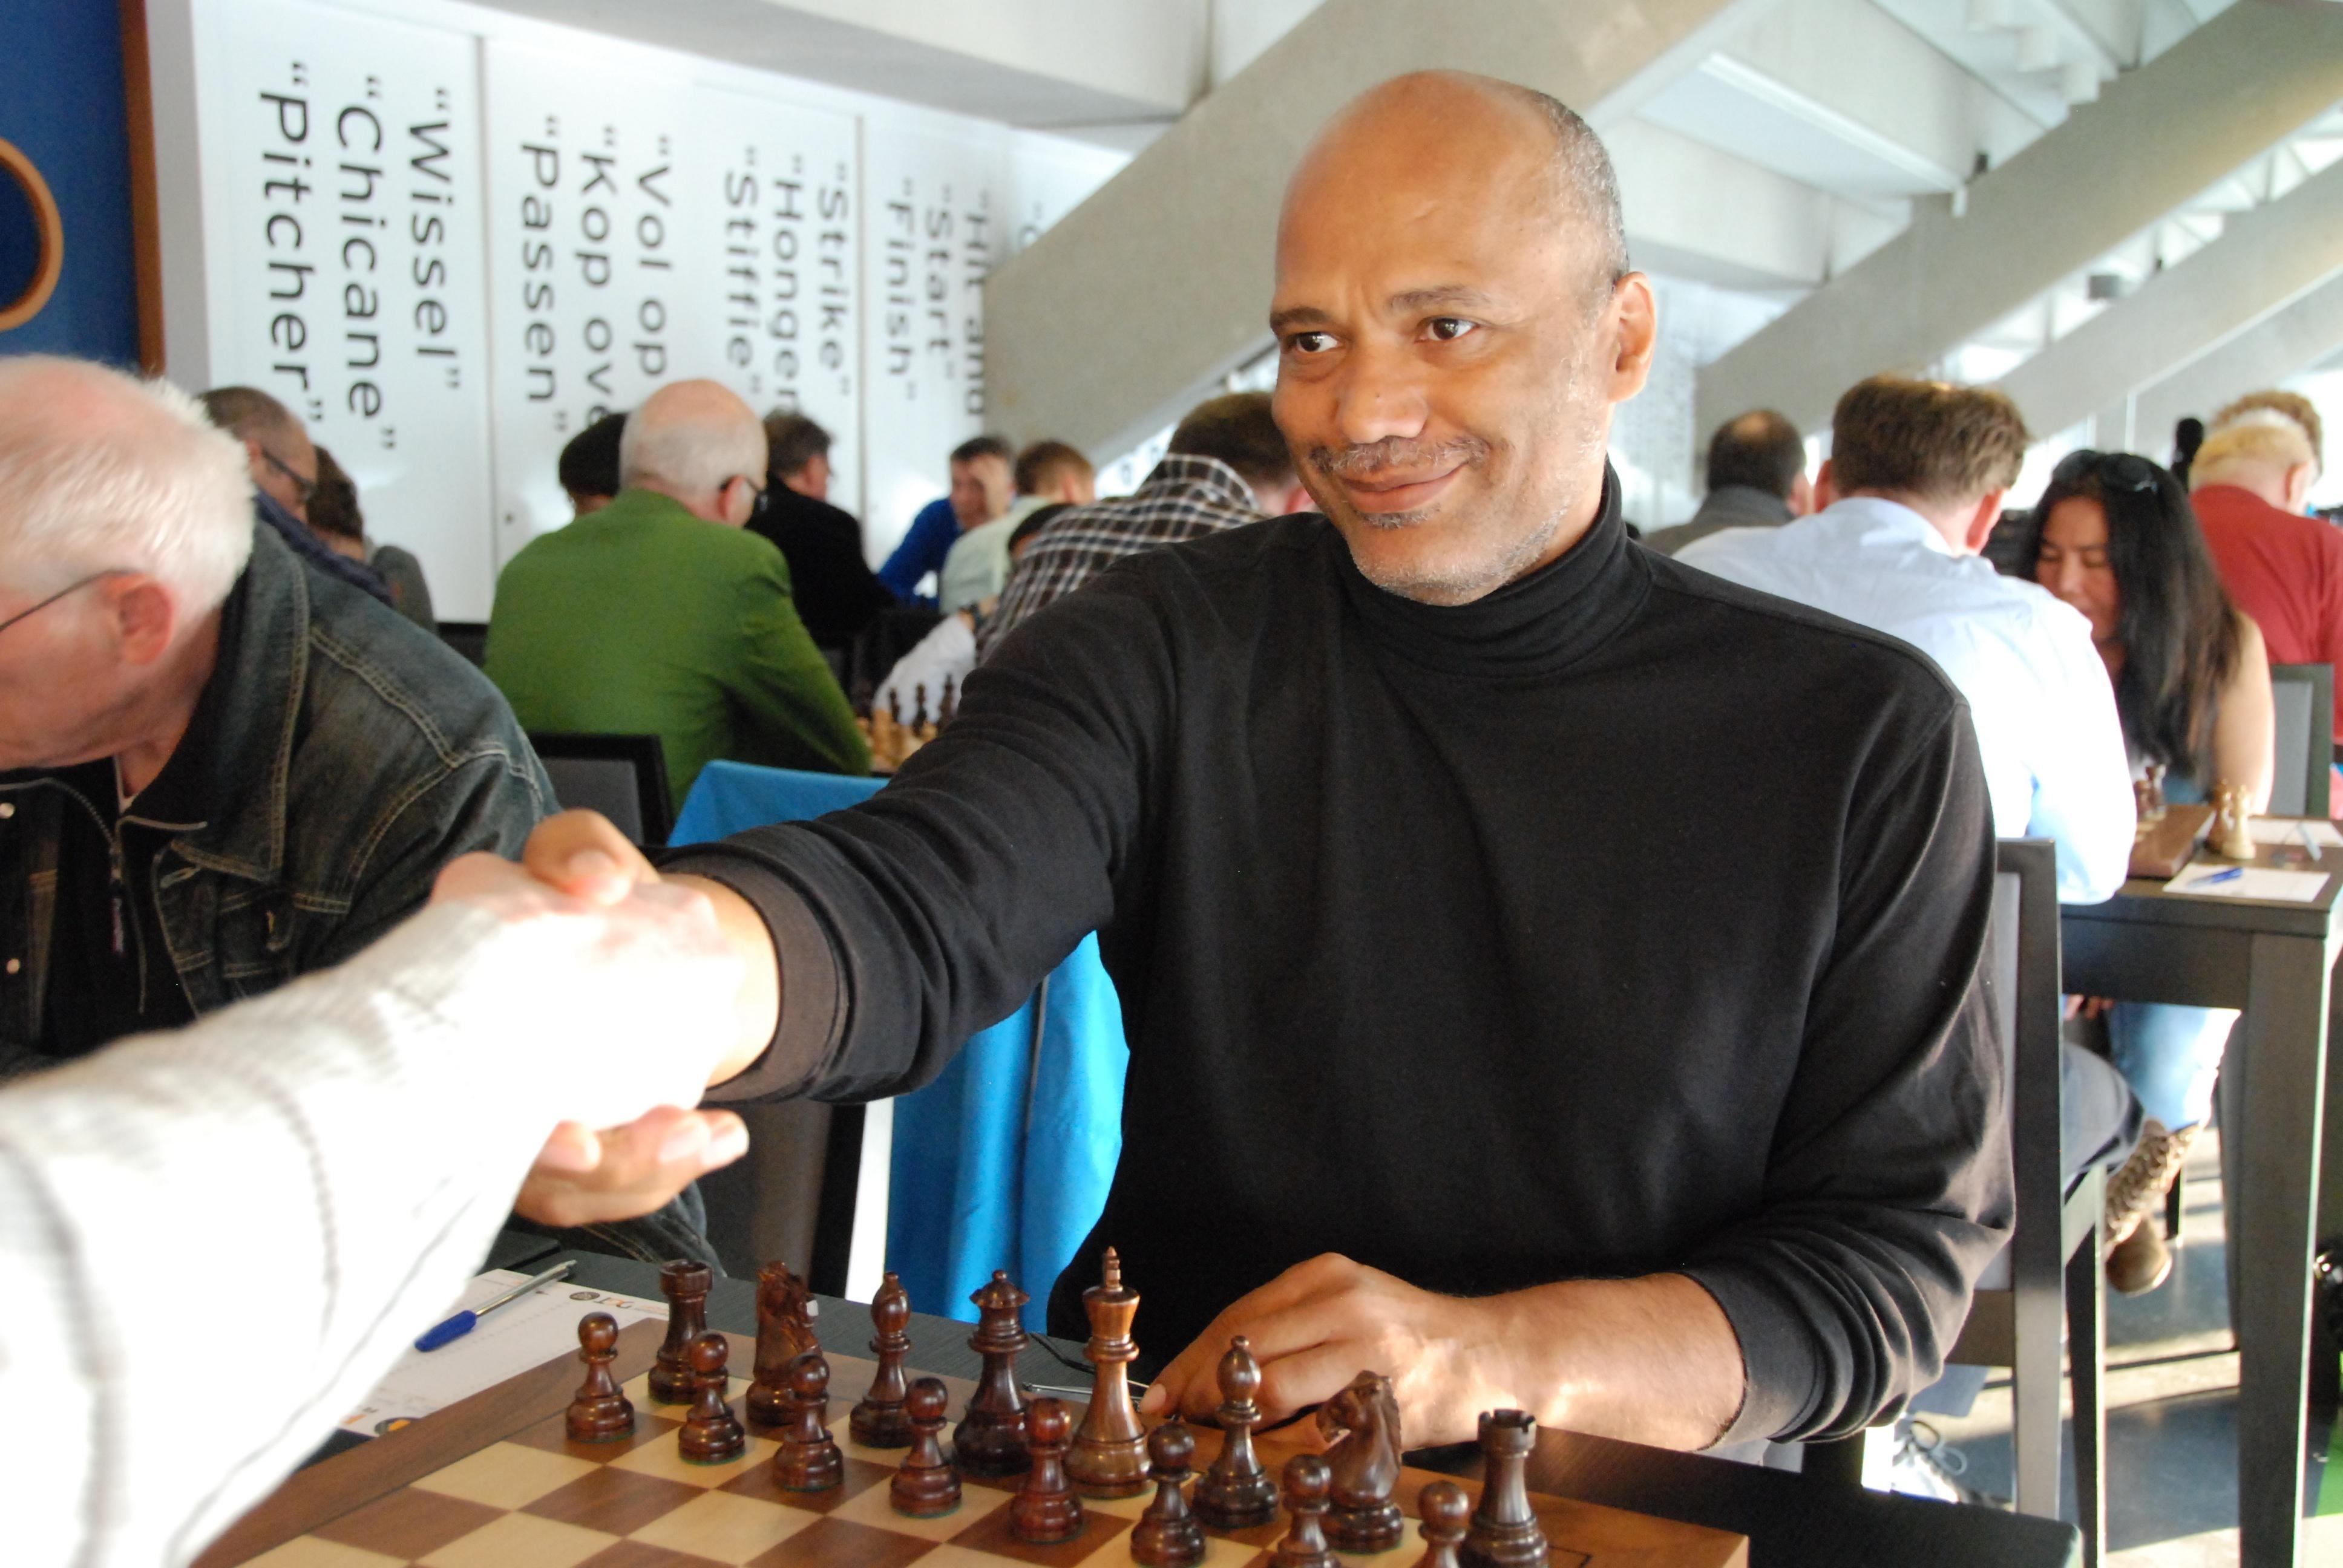 World Youth Chess Championship - Wikipedia